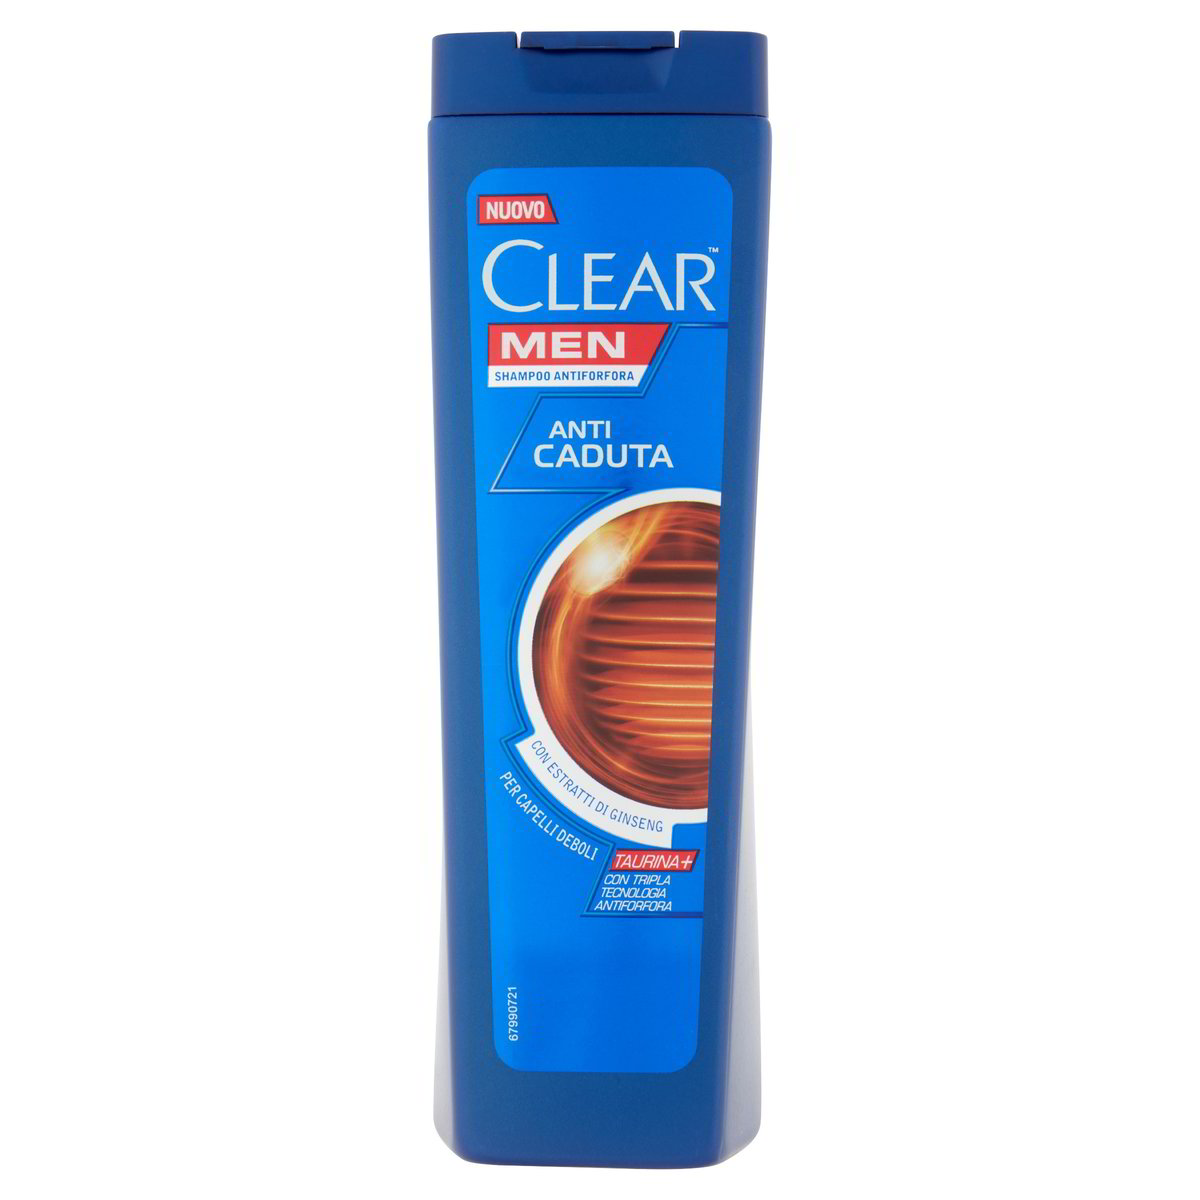 Clear Shampoo Men Antiforfora Anticaduta